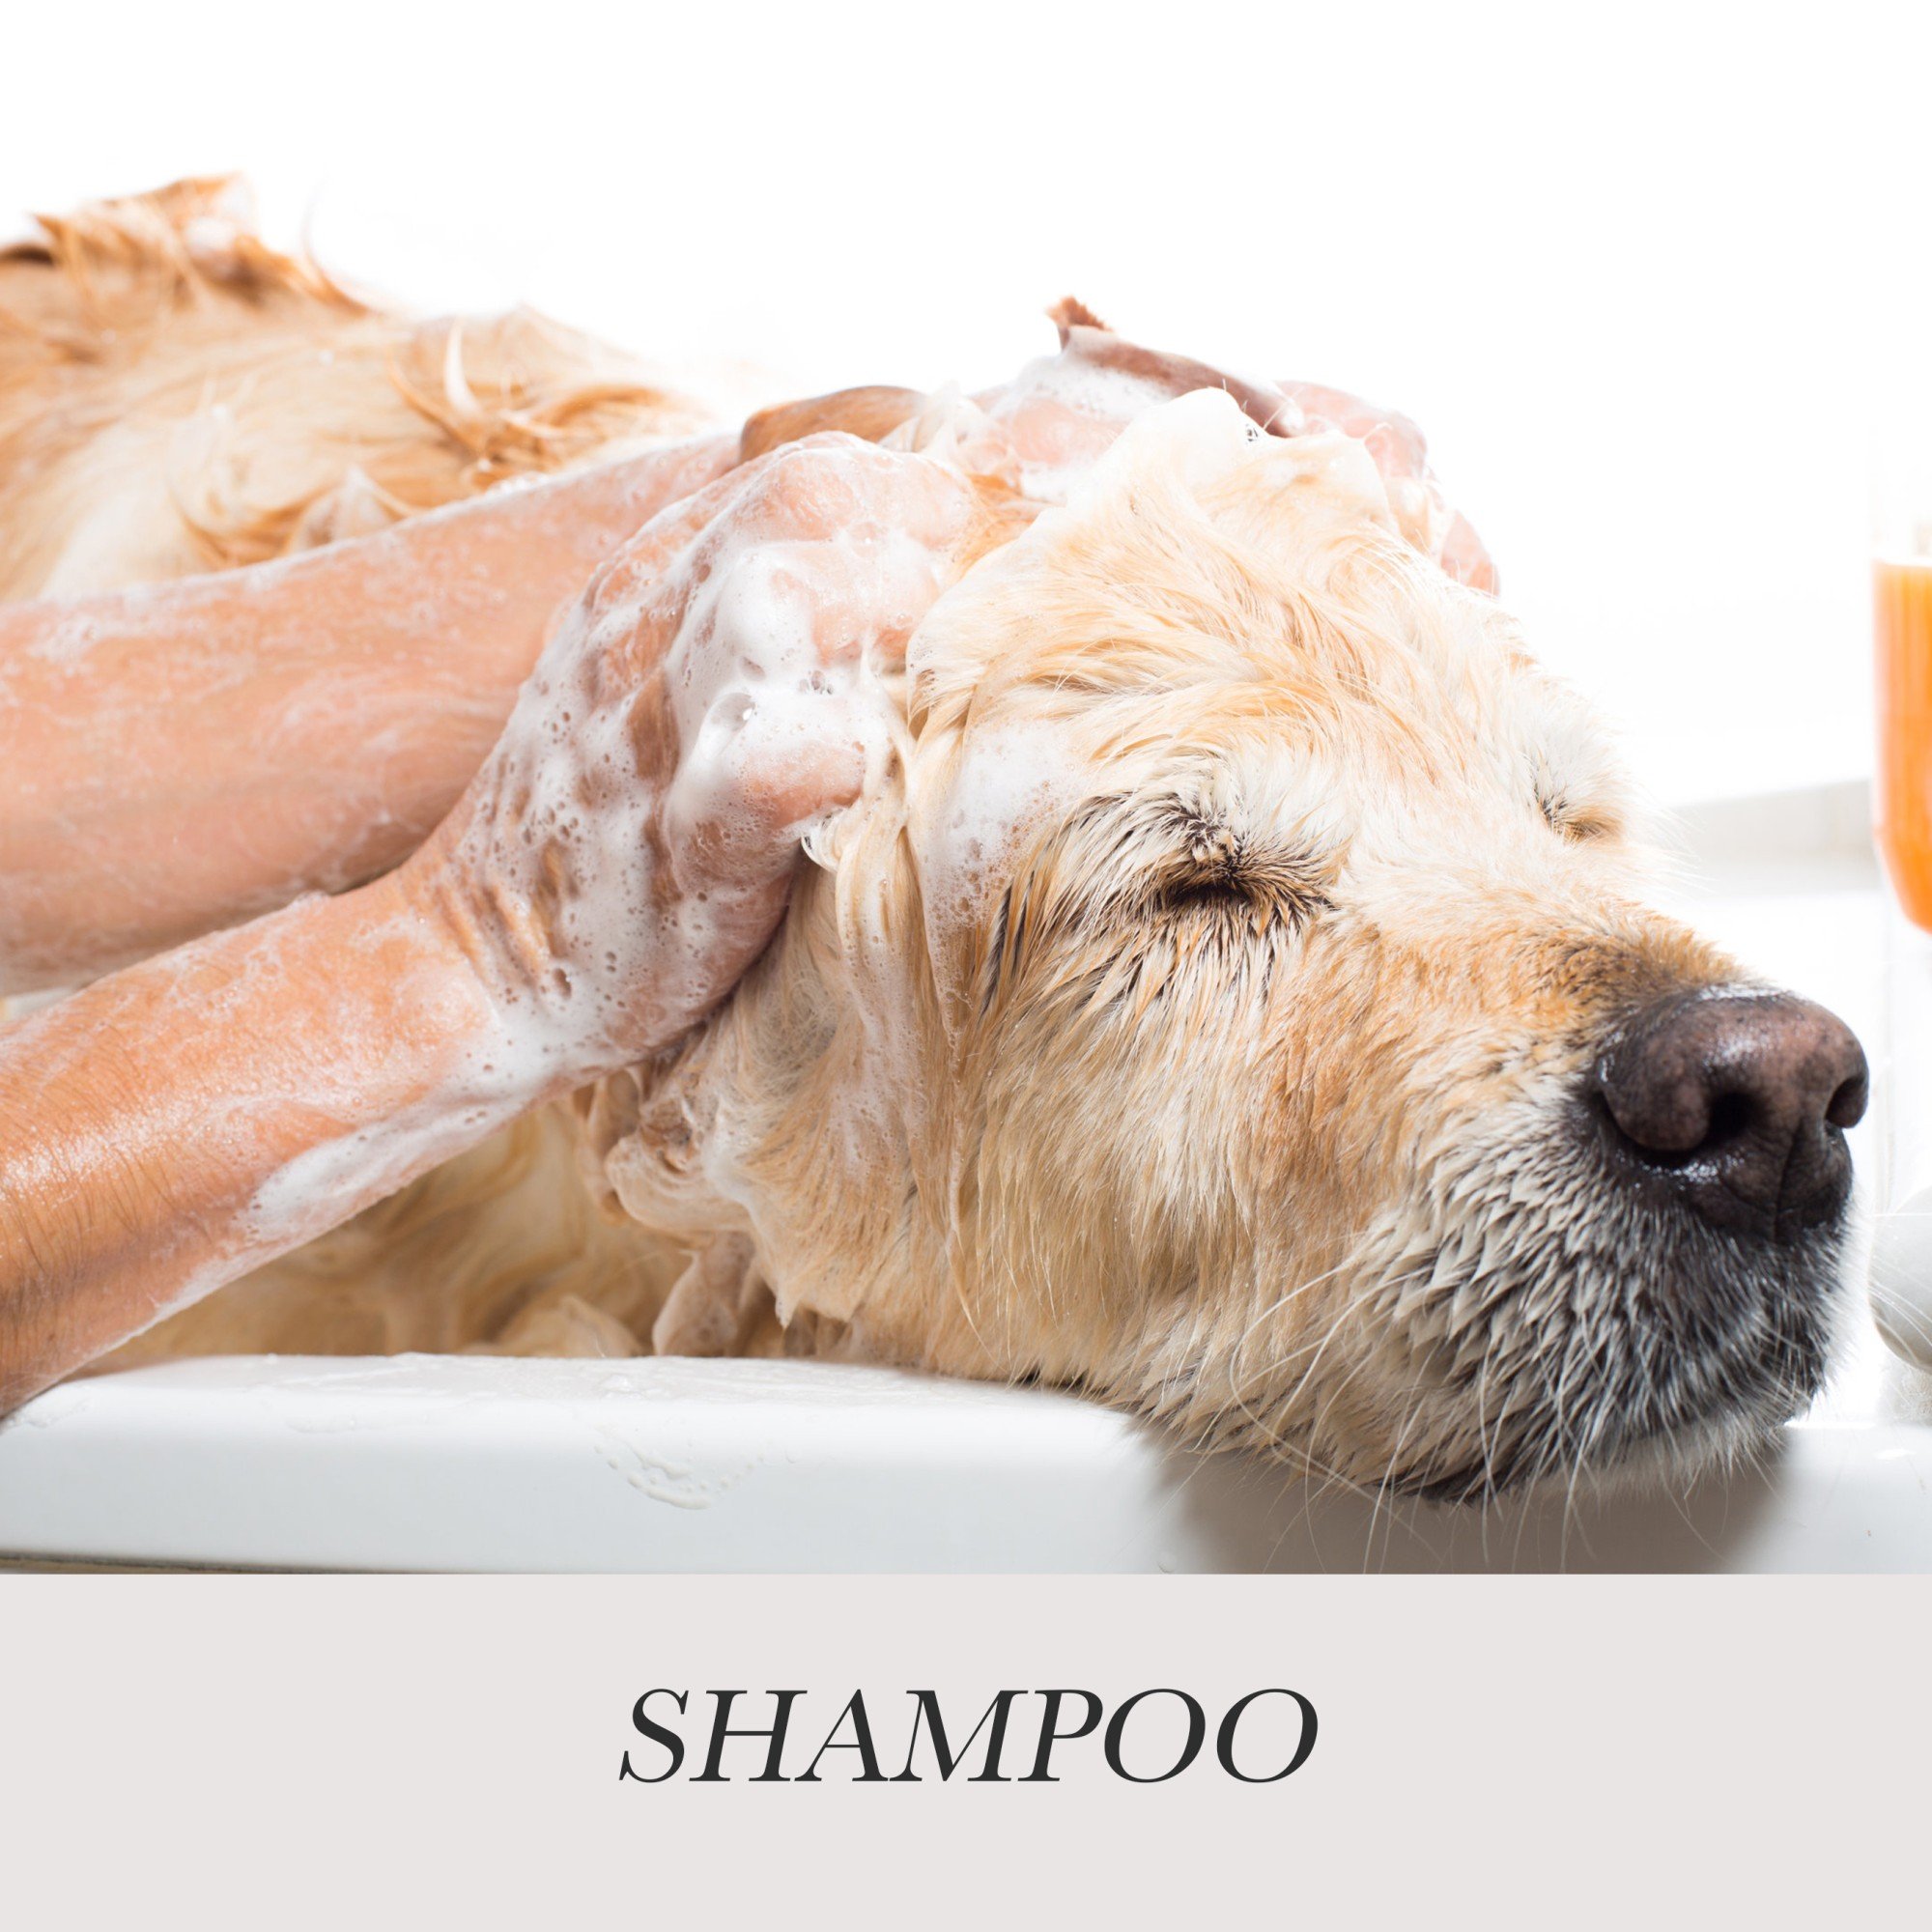 Shampoo - Briis AS